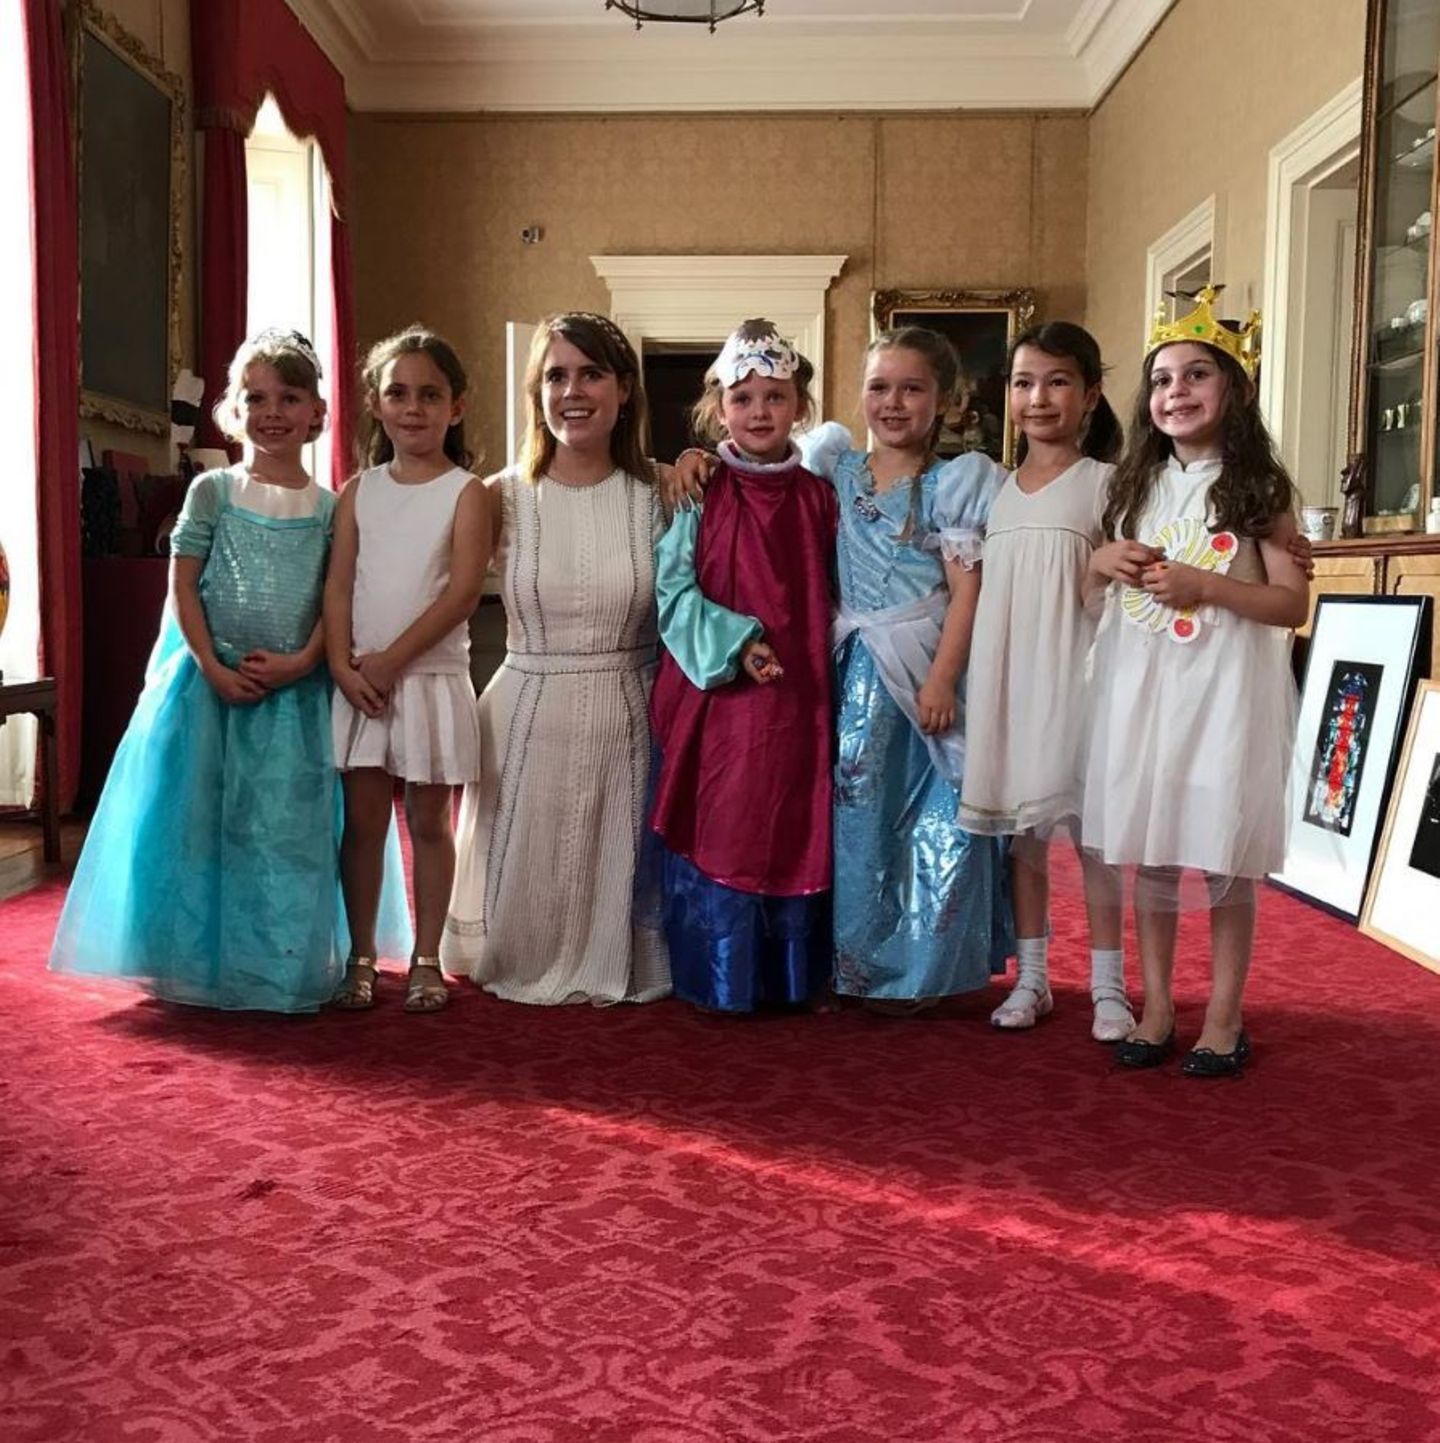 Sechs verkleidete Prinzessinnen und eine echte: Harper und ihre Freundinnen - die alle als Prinzessinnen verkleidet sind - treffen die waschechte Prinzessin Eugenie von York während der Feierlichkeiten im Kensington Palast. Stolz lächelt die Mädchen-Truppe in die Kamera. 